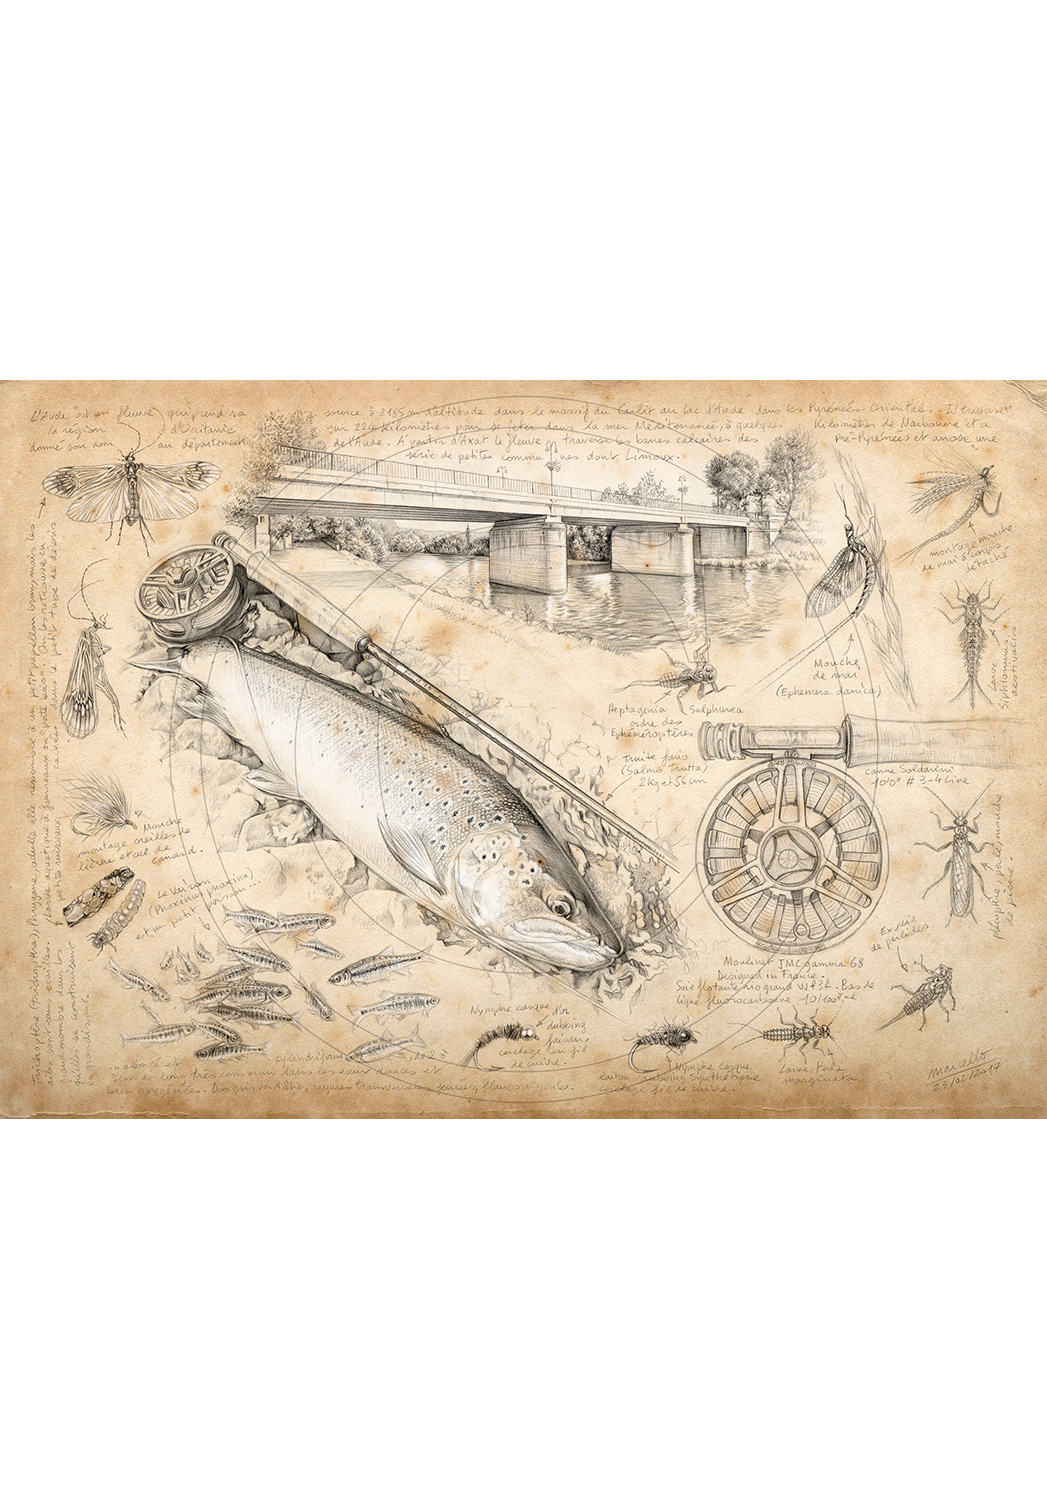 Marcello-art: Aquatic fauna 362 - Trout fario of Limoux